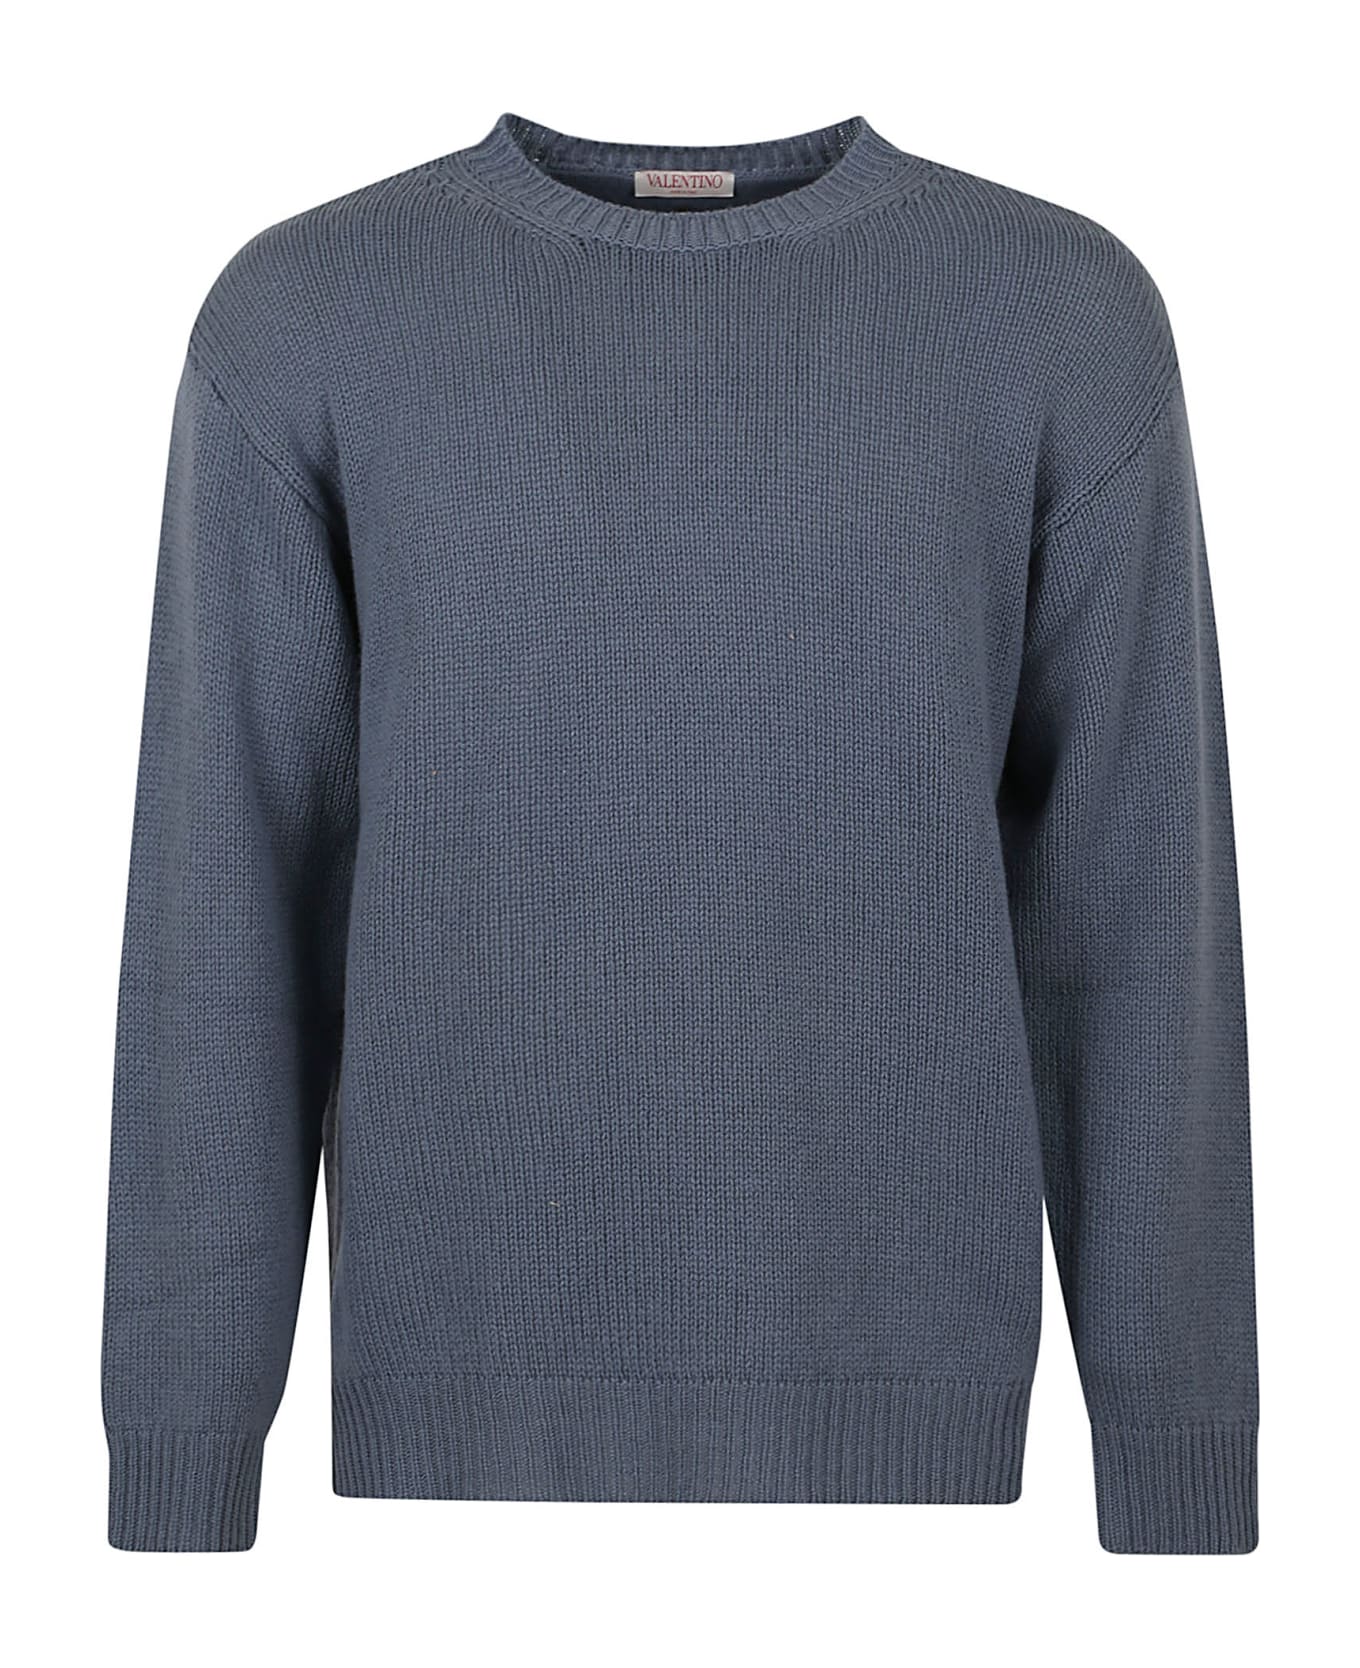 Valentino Garavani Cashmere Sweater - Stone ニットウェア